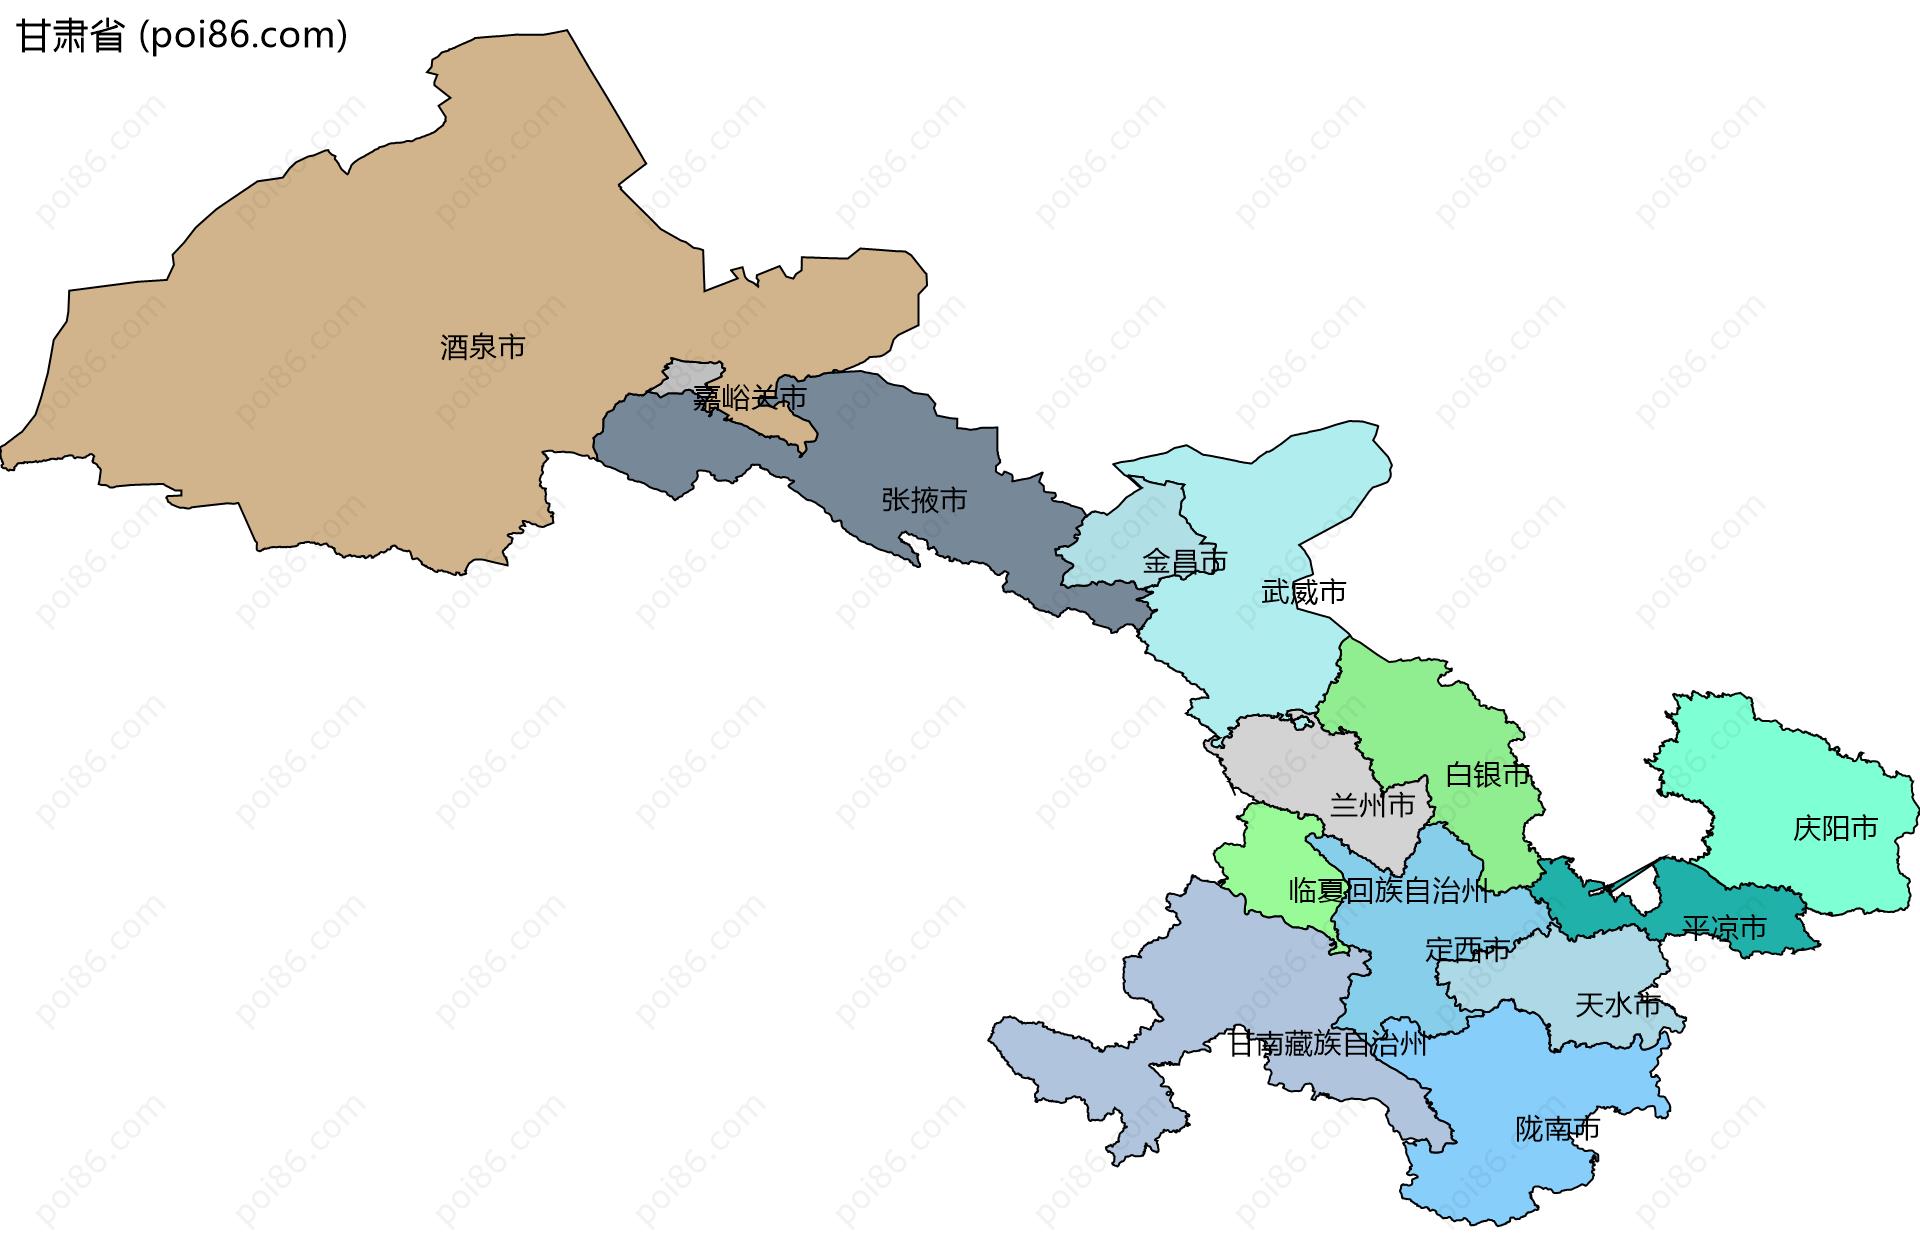 甘肃省边界地图